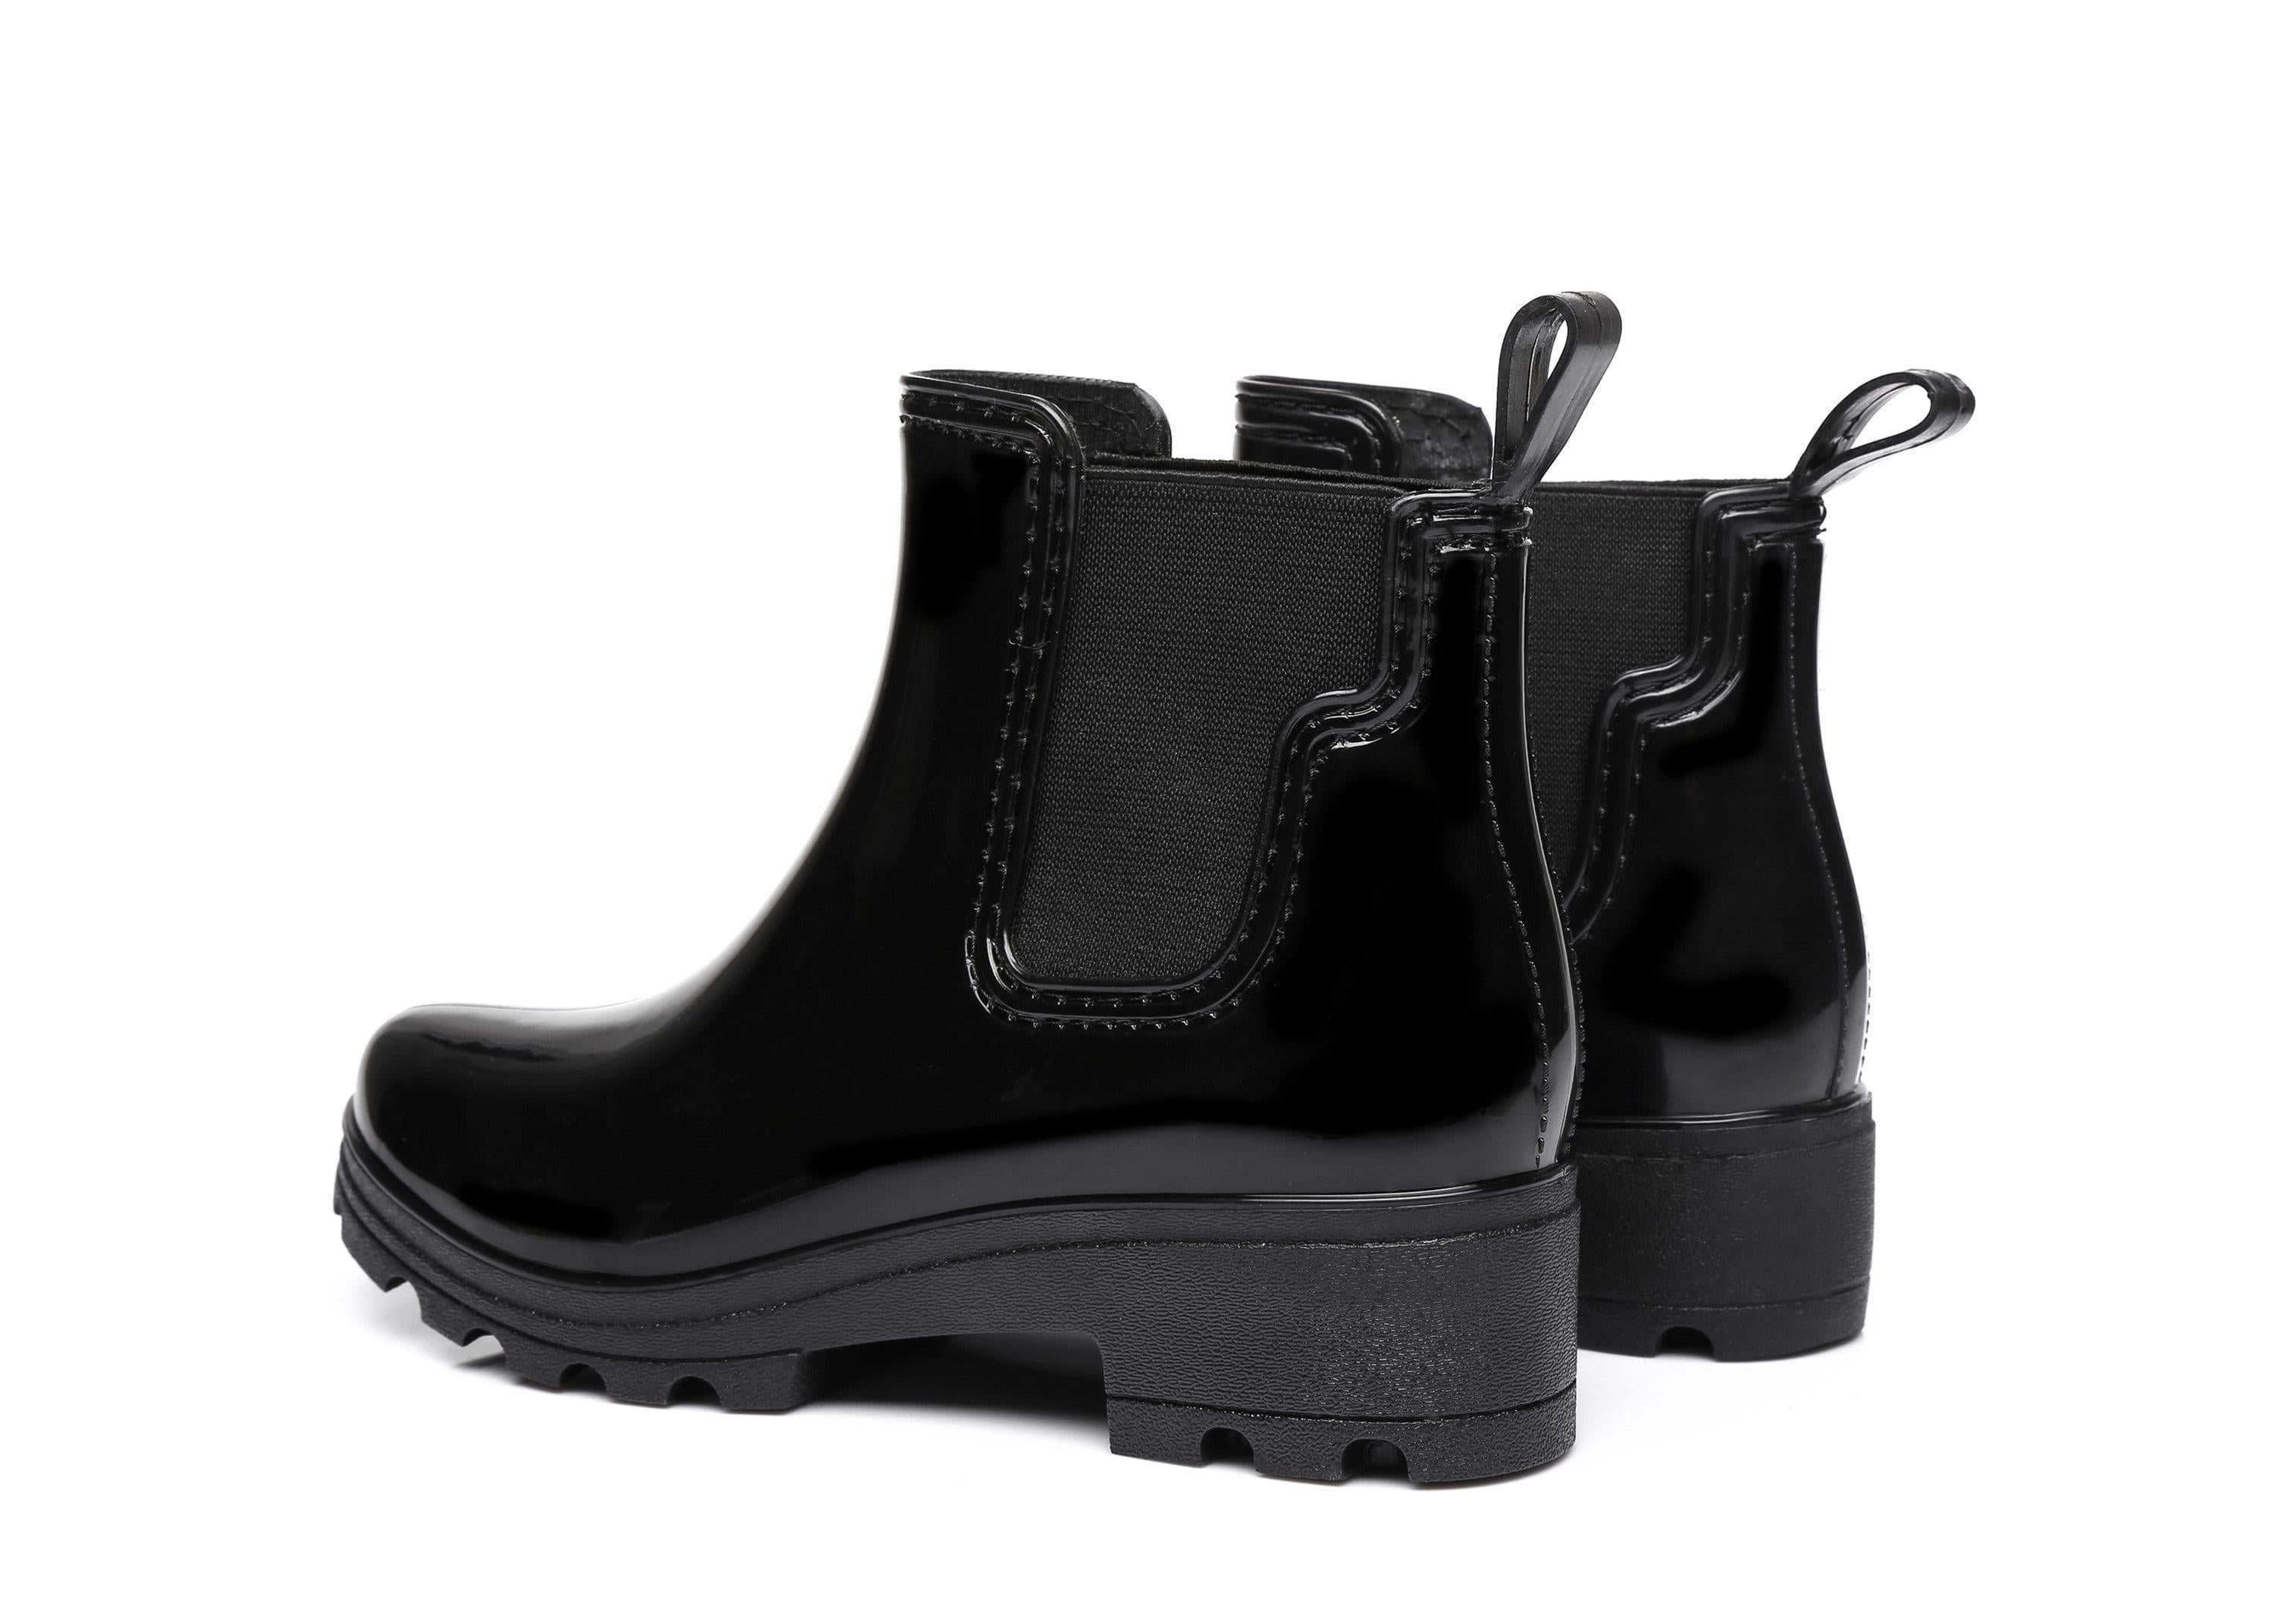 UGG Boots - AS UGG Rain Boots Vivily #521008 (2397853548602)